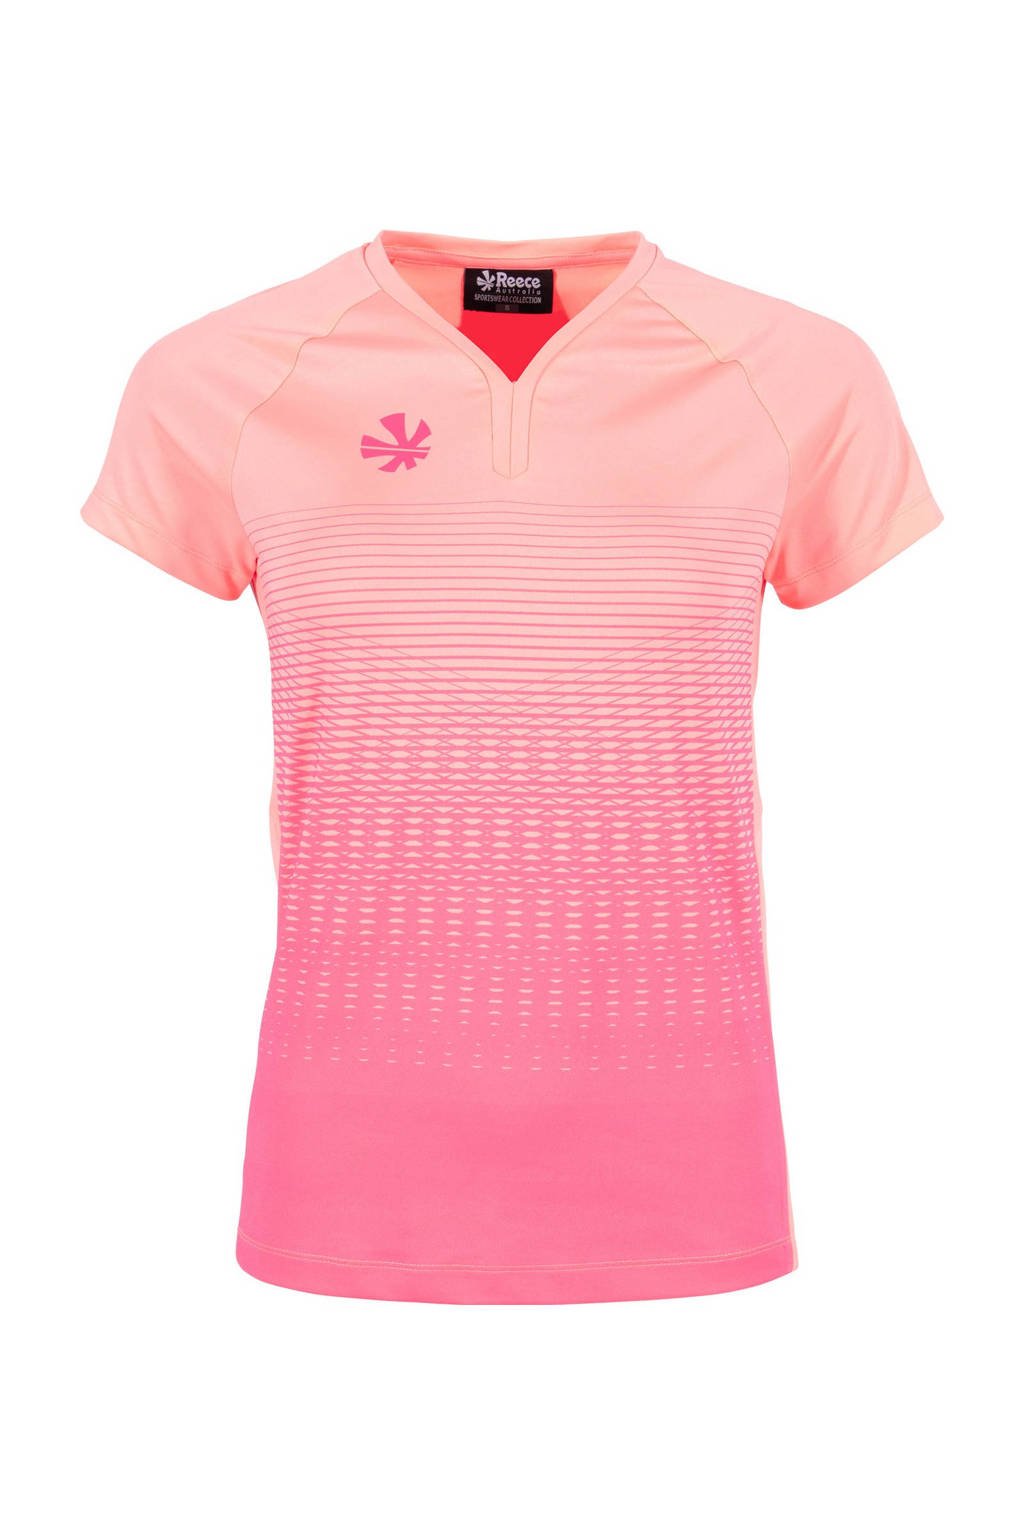 Lichtroze en roze dames Reece Australia sport T-shirt van polyester met all over print, korte mouwen en V-hals